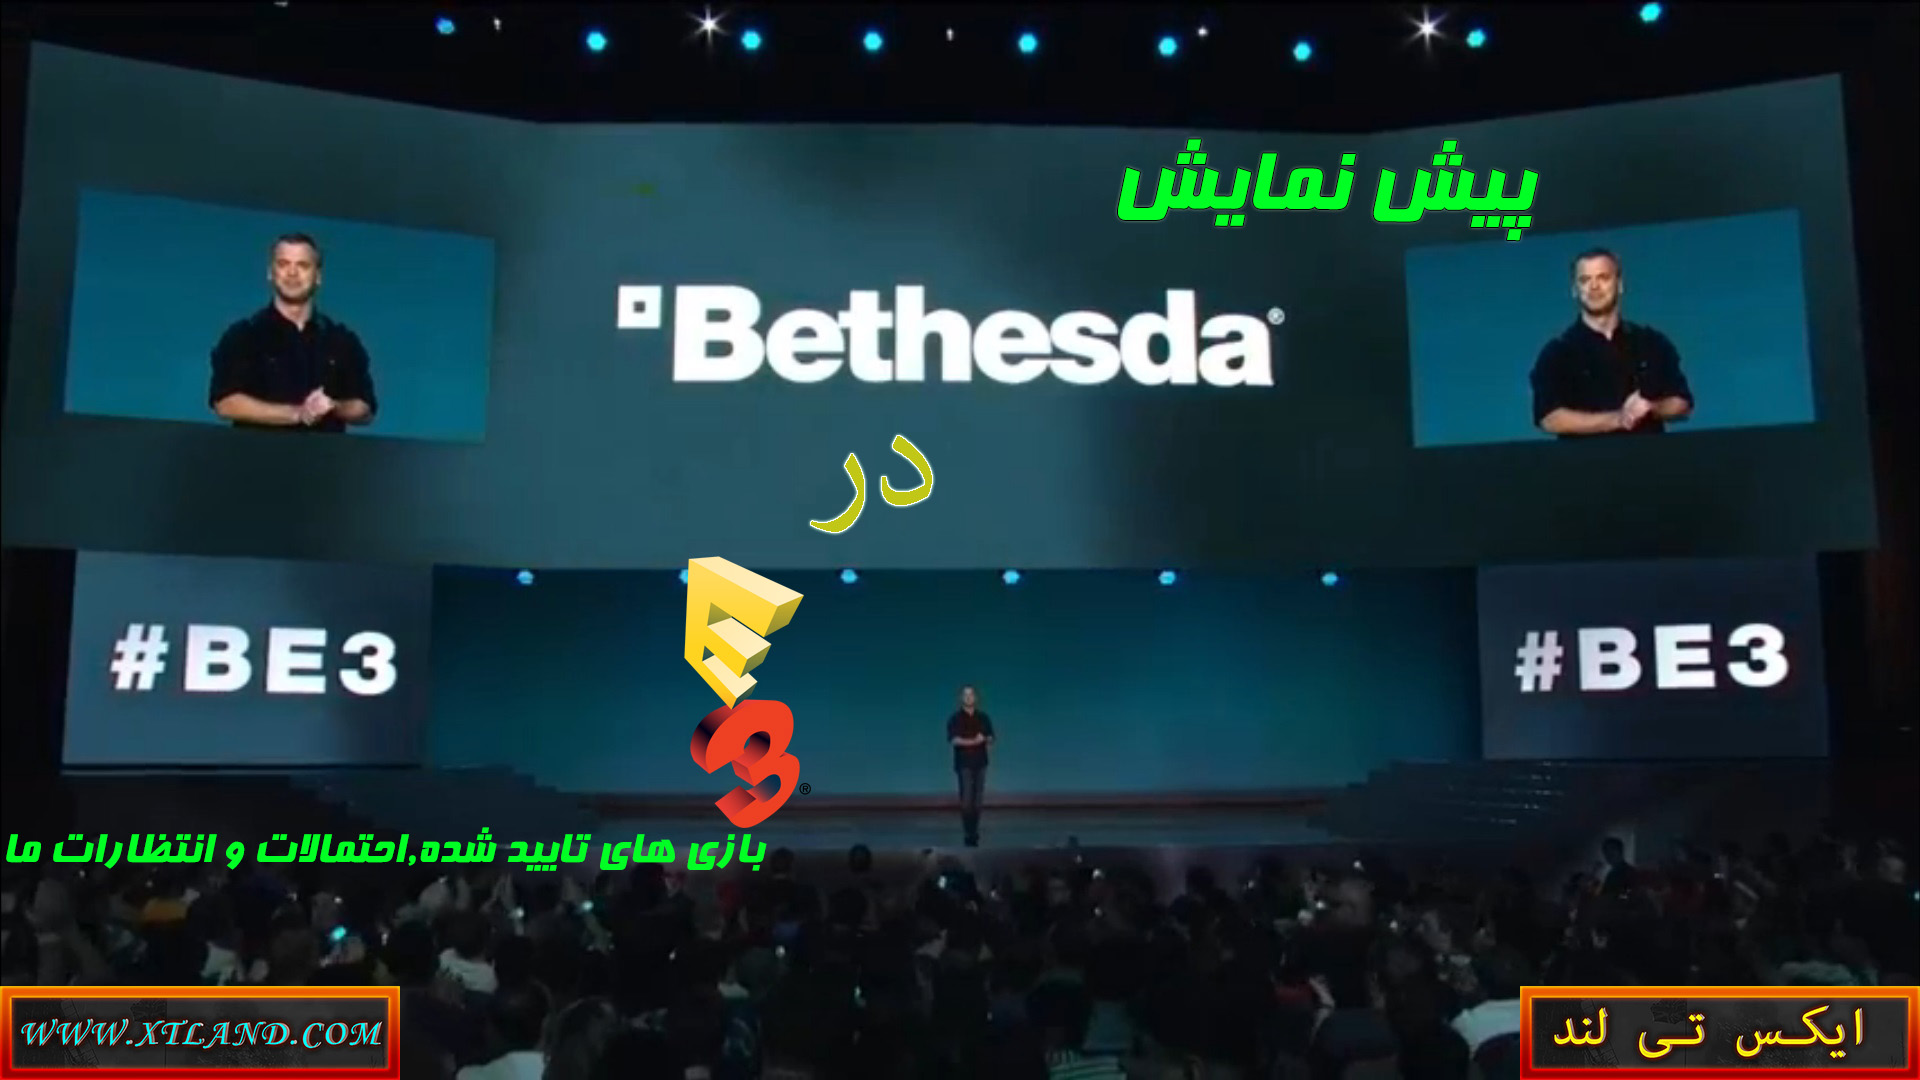 پیش نمایش کنفرانس Bethesda در E3 2018|بازی های تایید شده,احتمالات و انتظارات ما